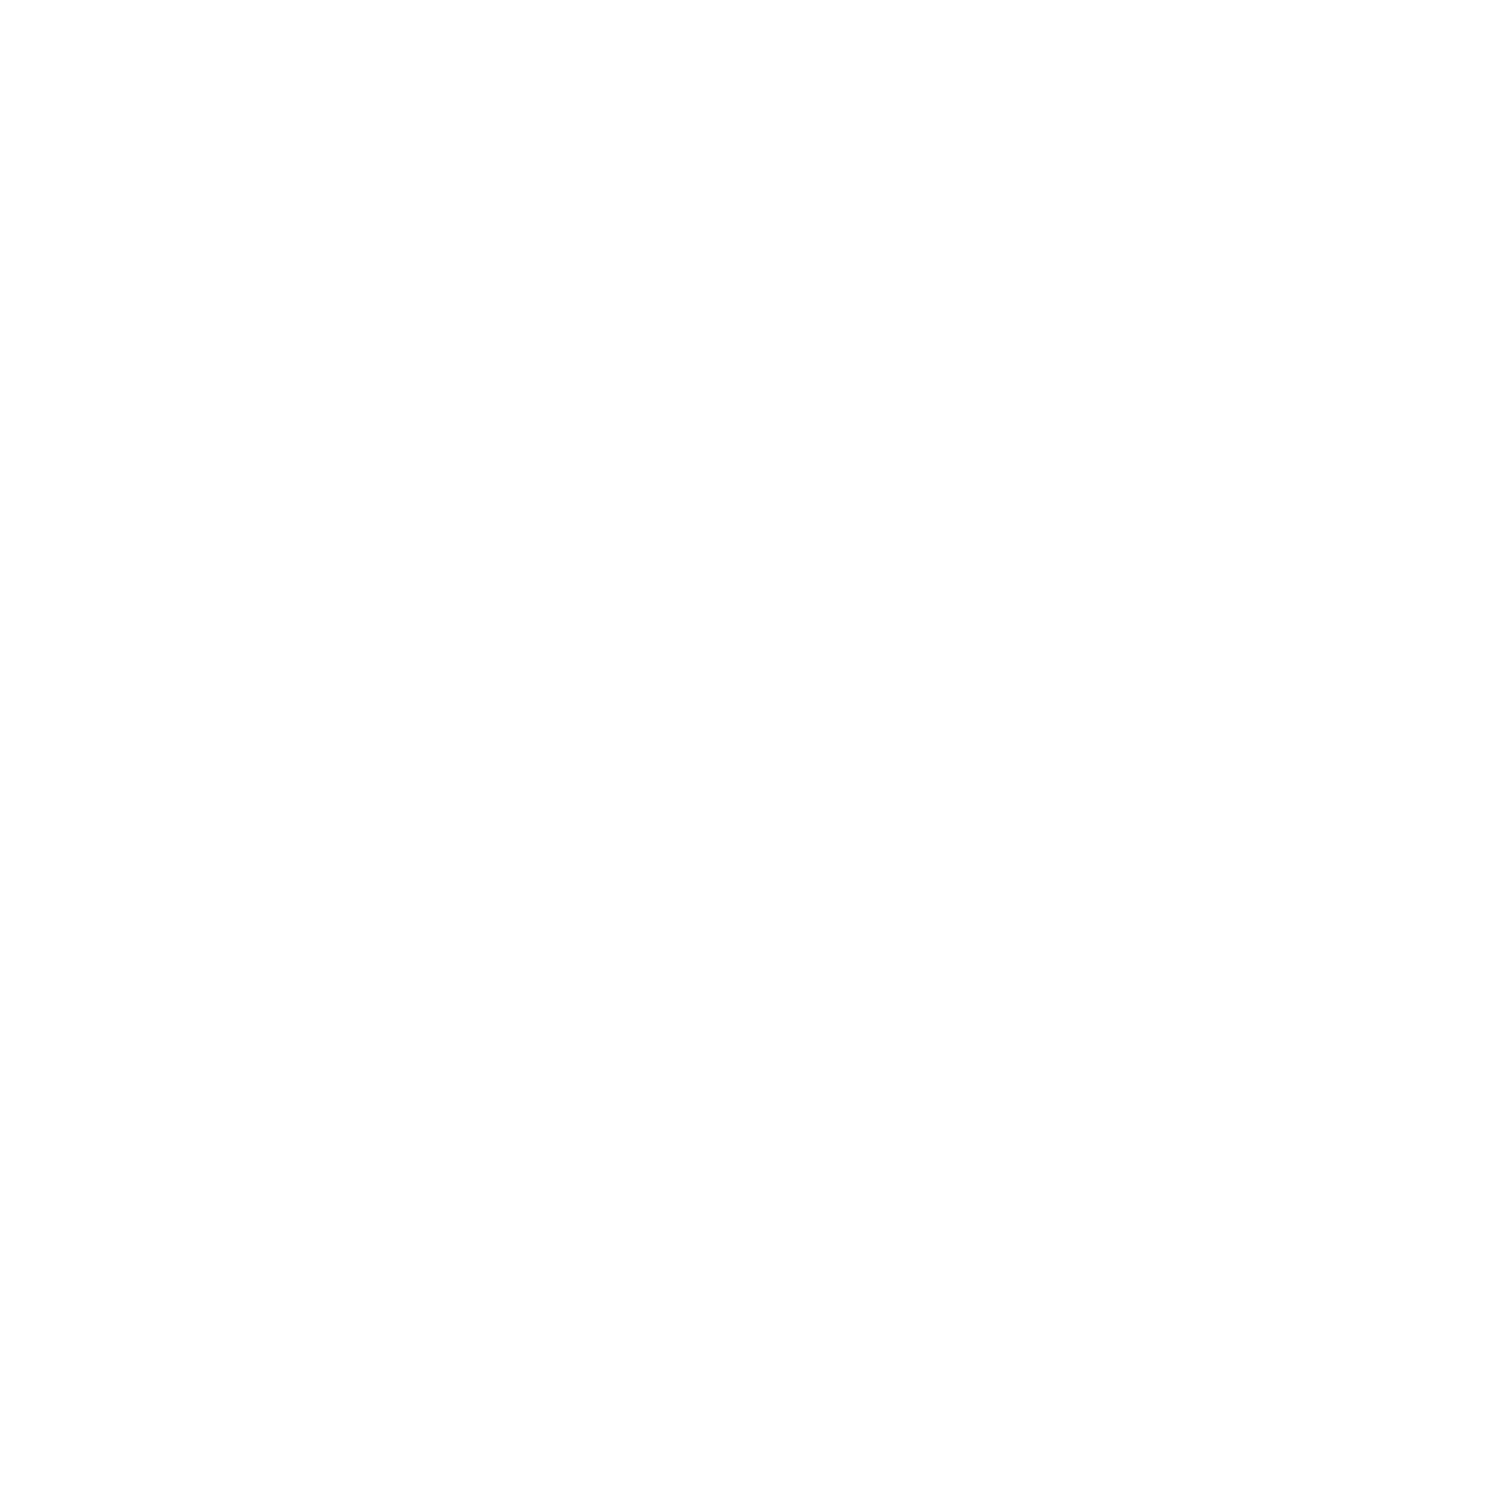 Quad logo for dark backgrounds (transparent PNG)